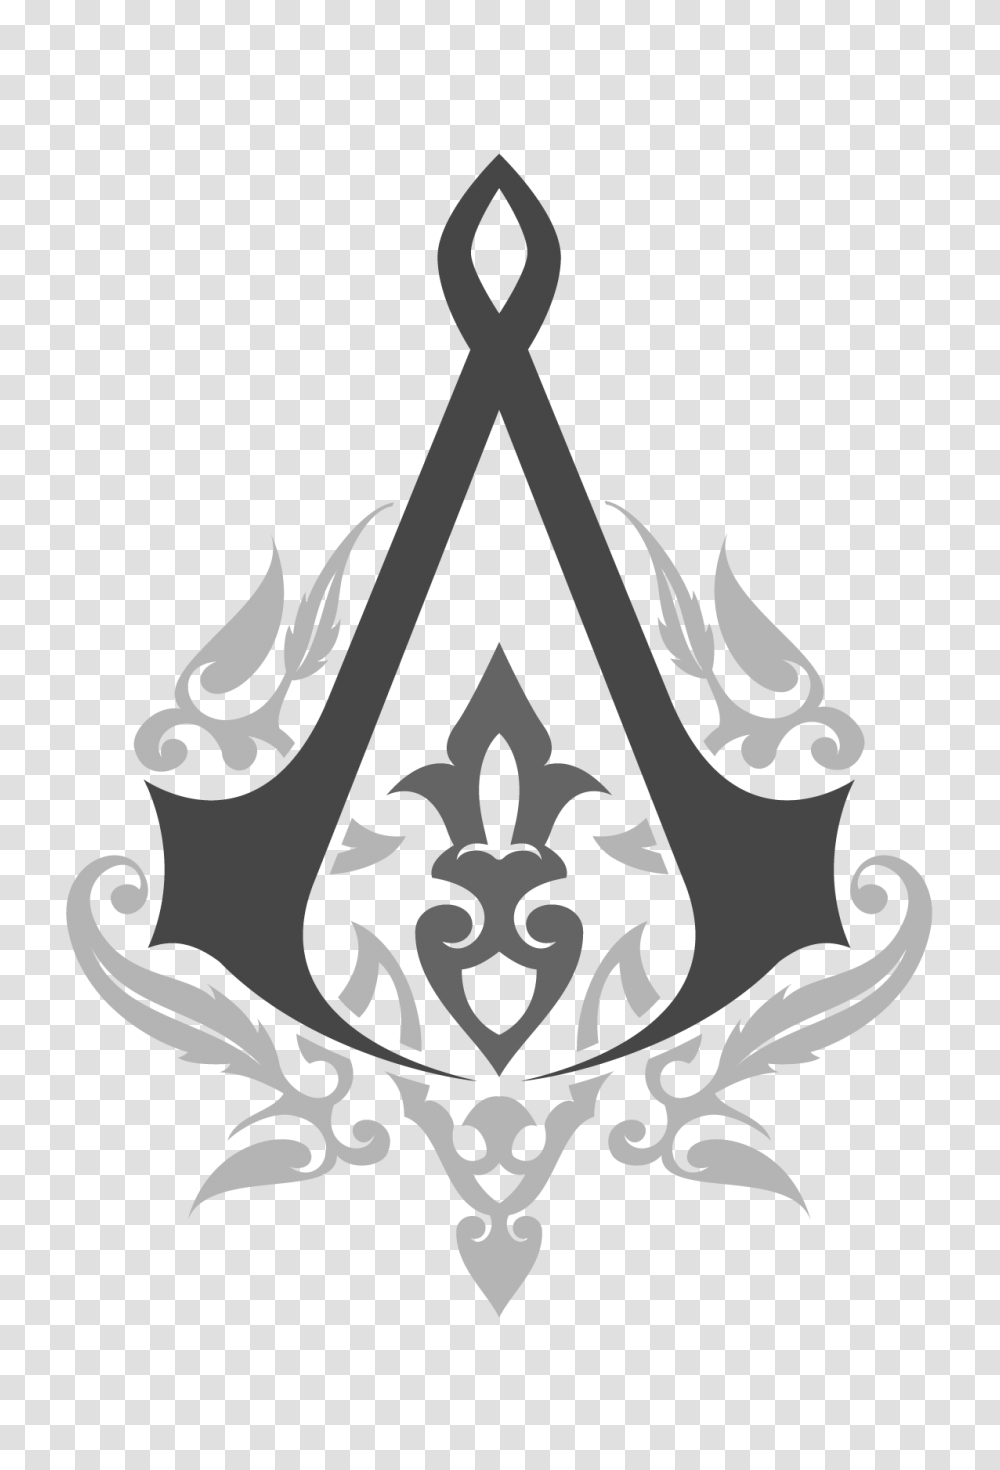 Assassins Creed Revelations Clip Art, Stencil, Cross, Emblem Transparent Png